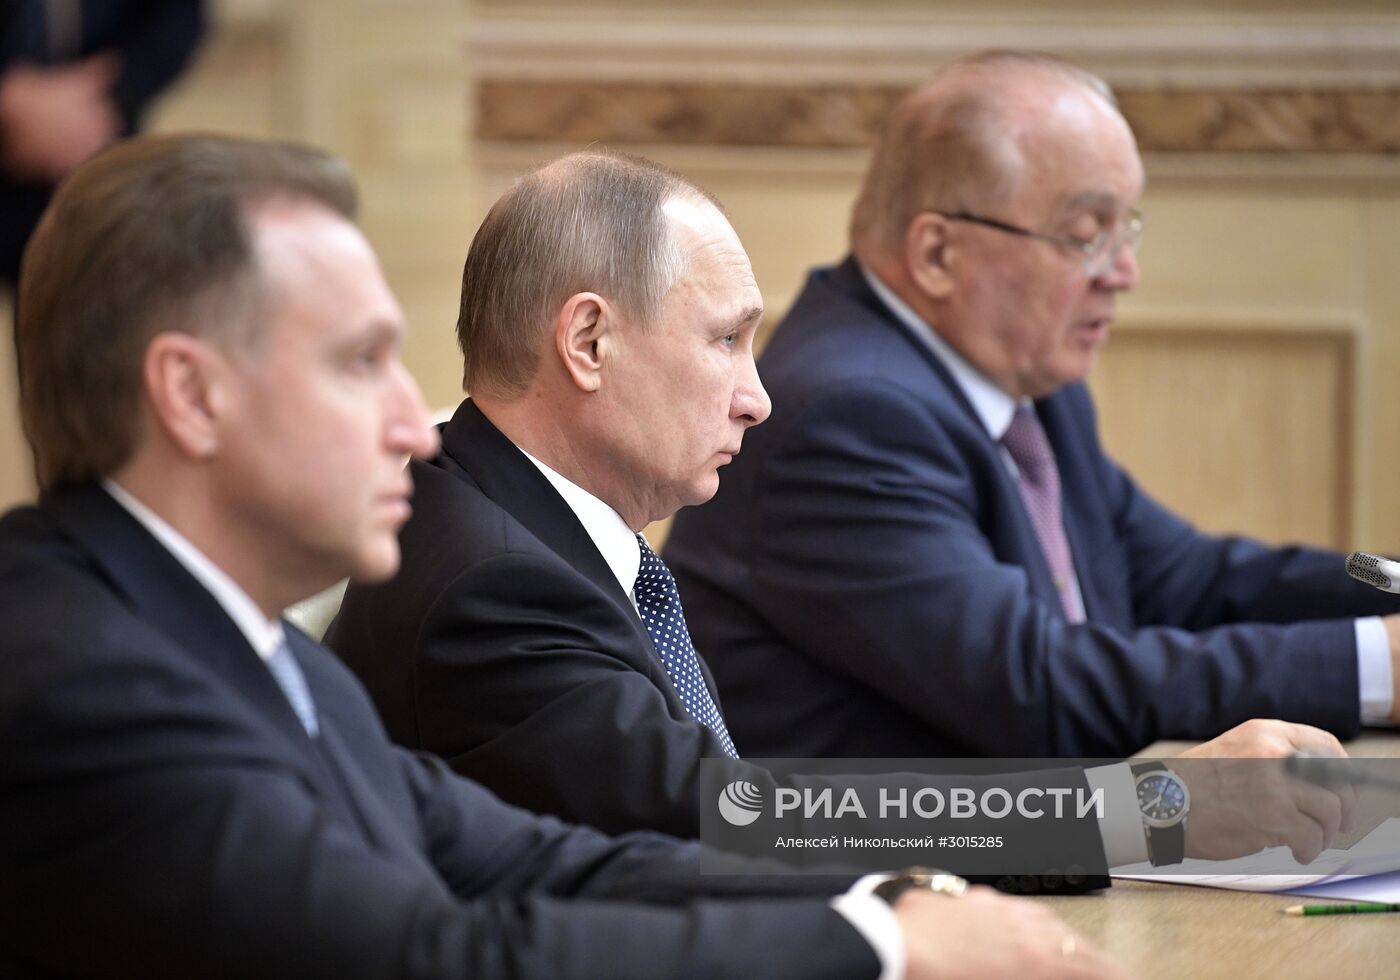 Президент РФ В. Путин провел заседание попечительского совета МГУ